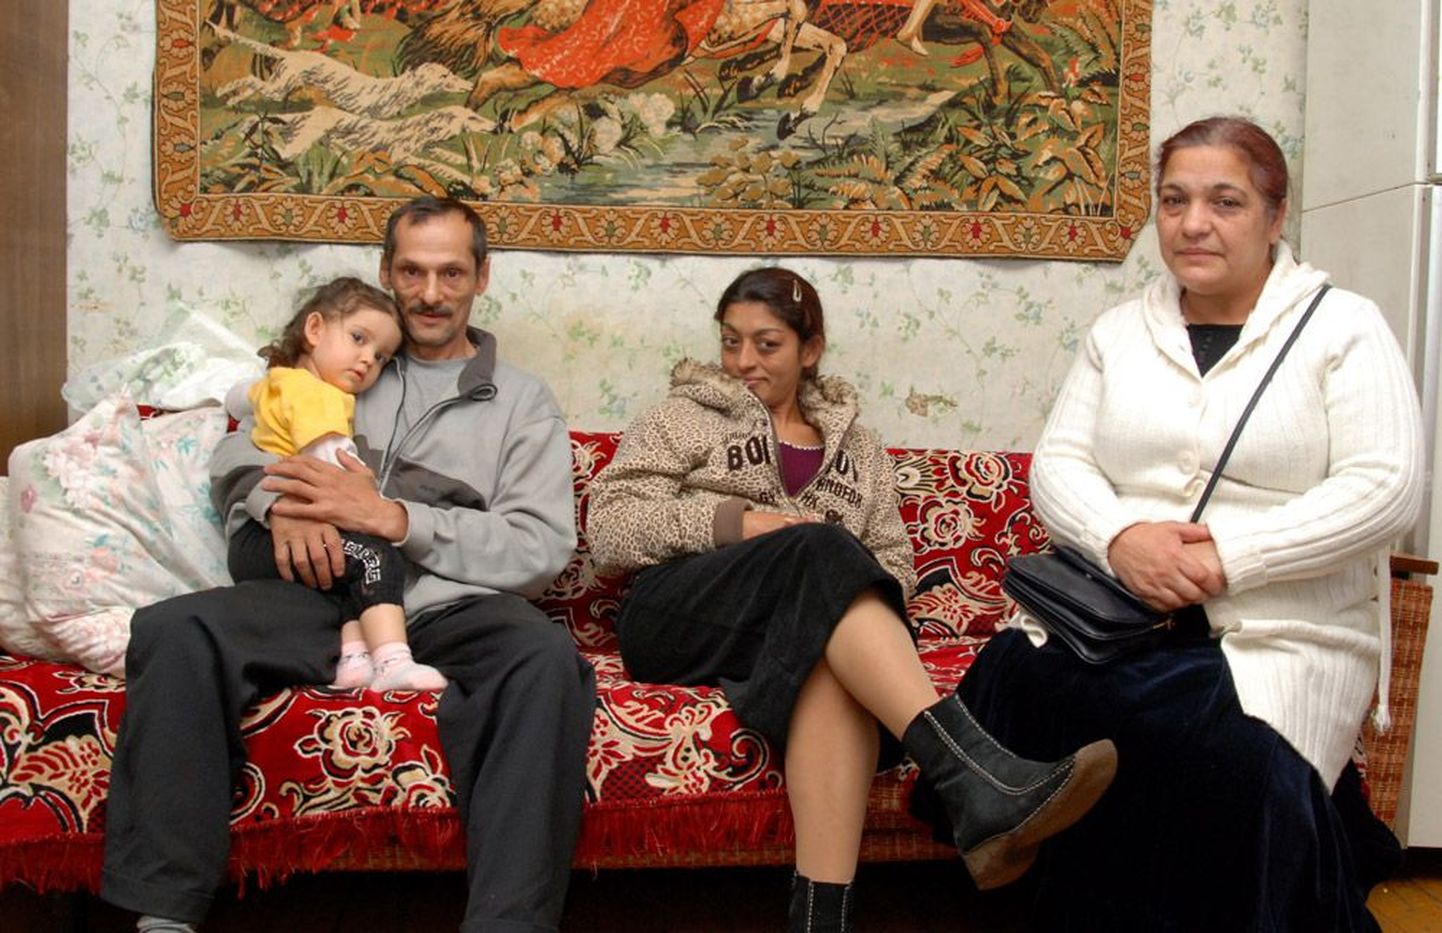 Pildil hoiab August Burkevitš oma Valga korteris süles lapselast Kajanat, tema kõrval istuvad Augusti õde Svetlana ja Lõuna-Eesti romade eestkõneleja Maila Grohovskaja.